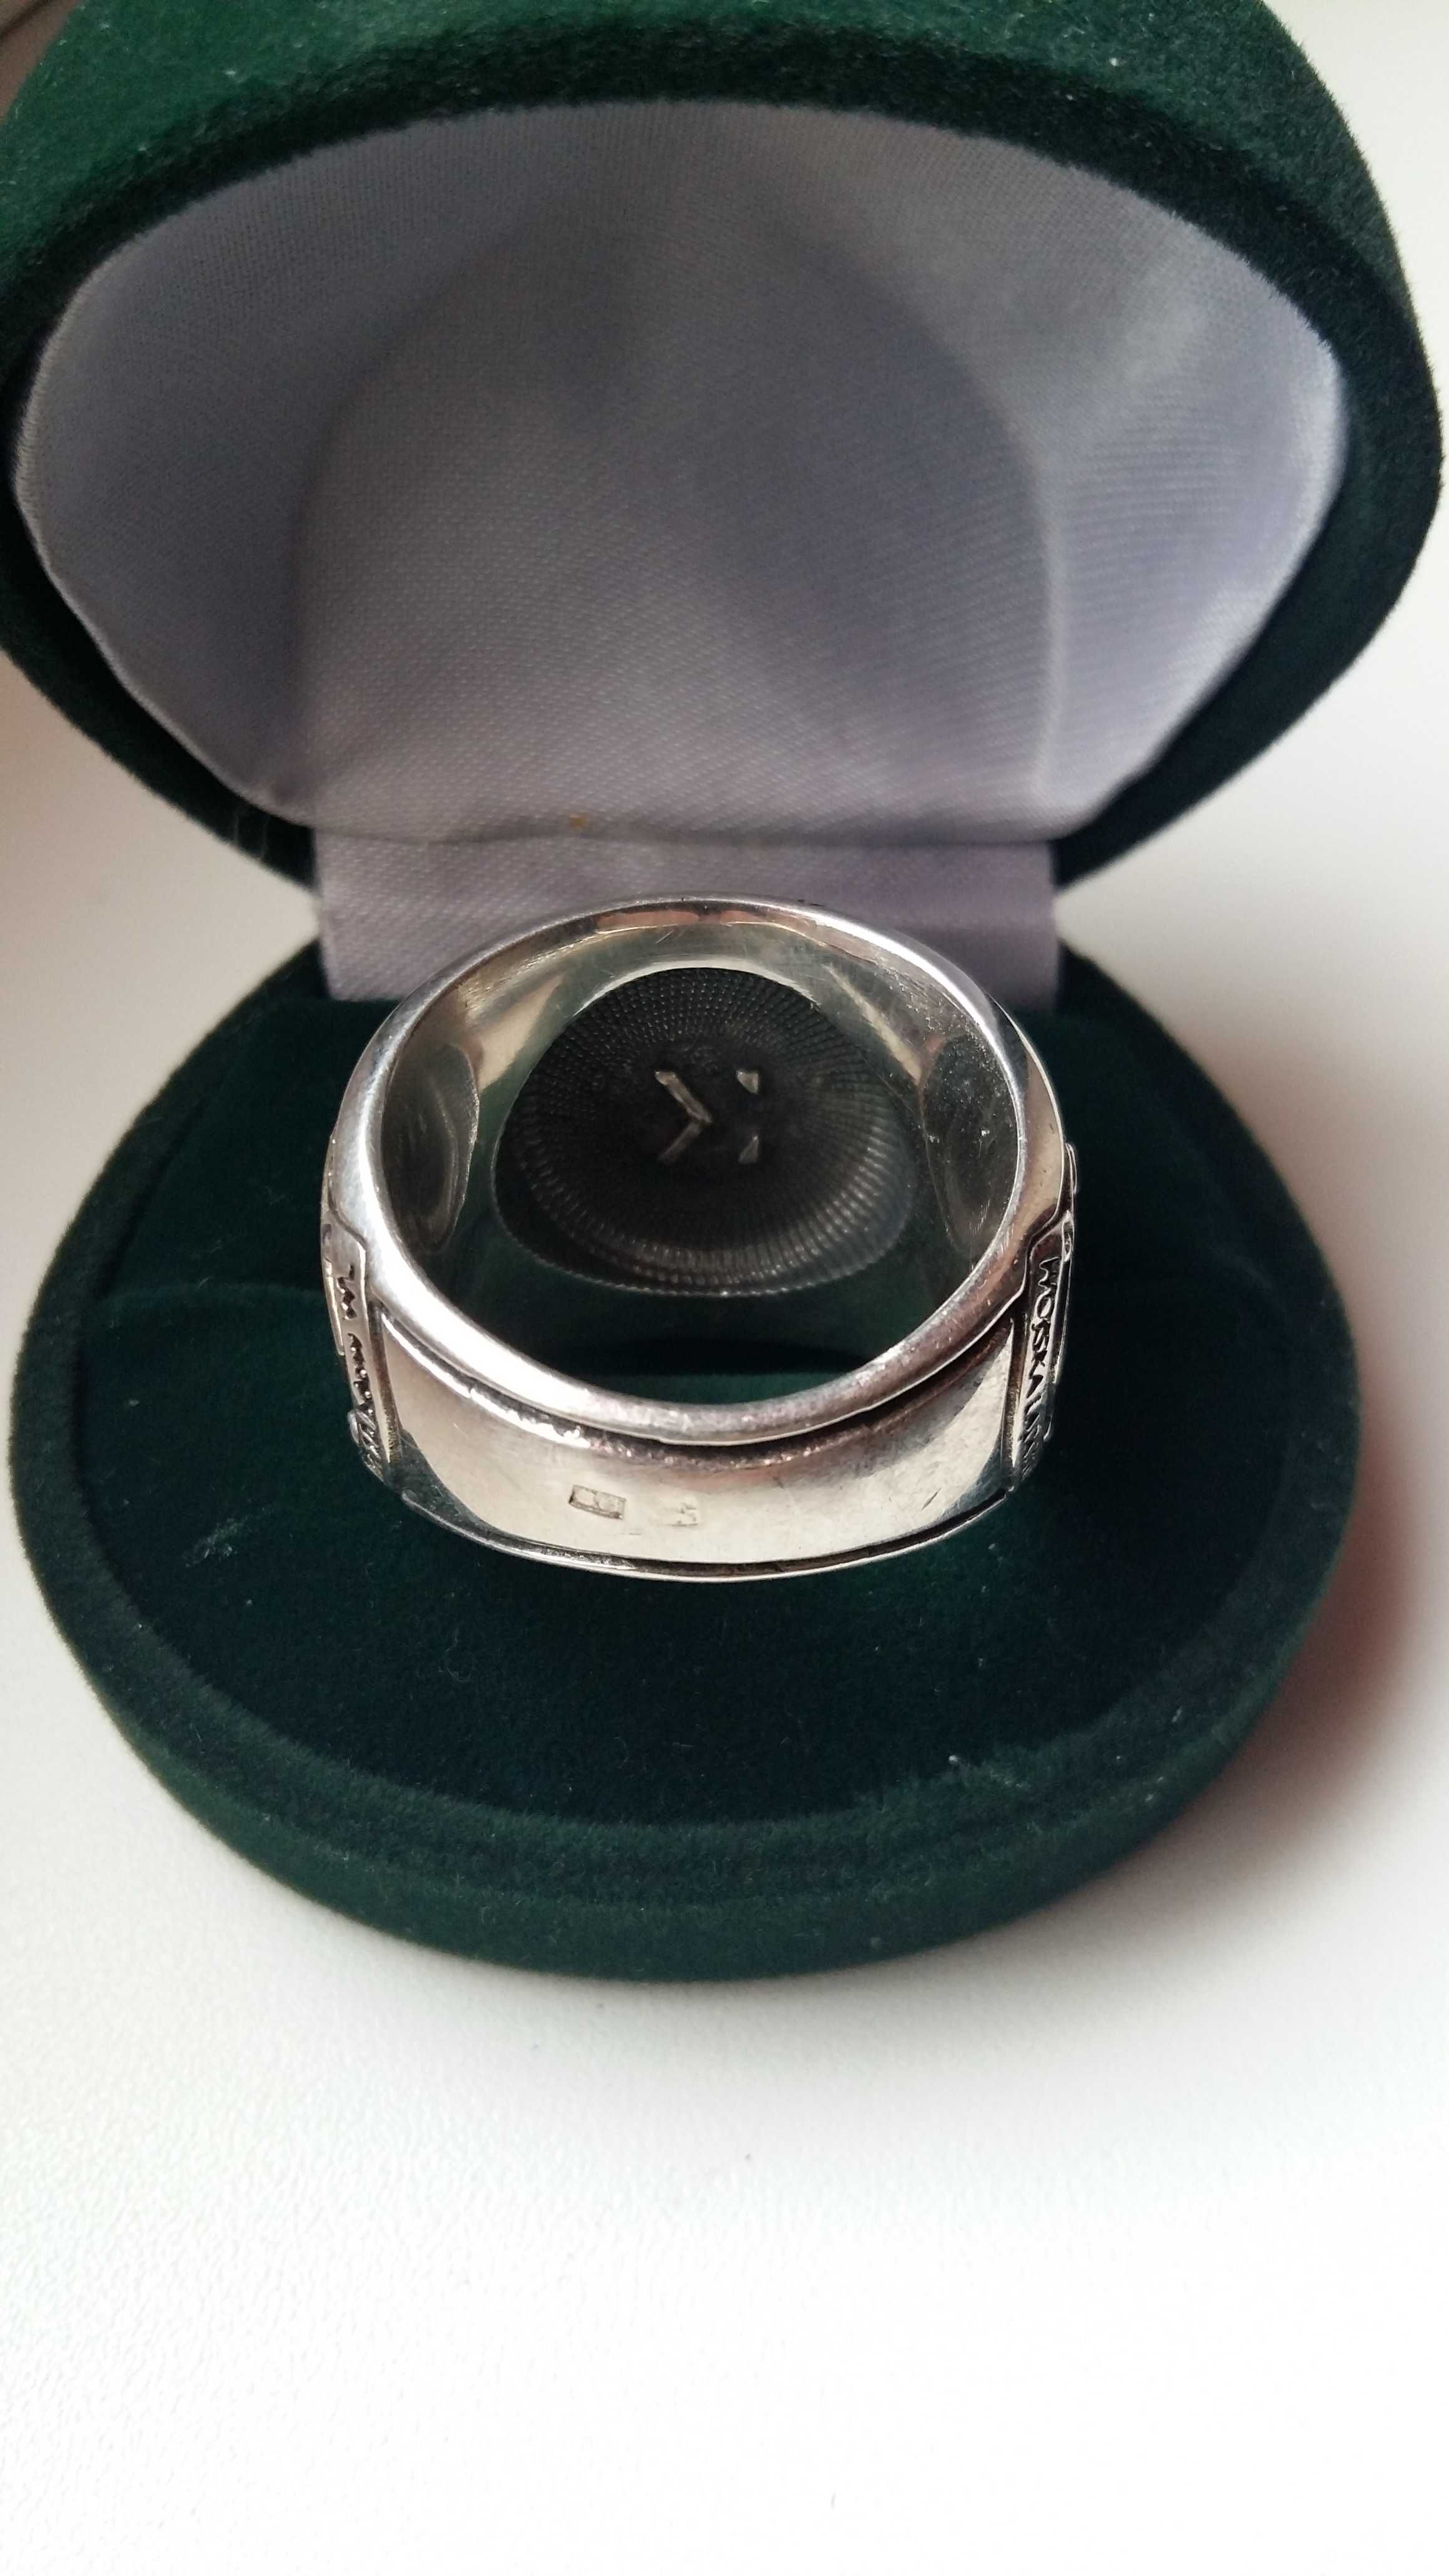 Sygnet-pierścień wojskowy srebro 925 sygnowany waga 27,8 gram.